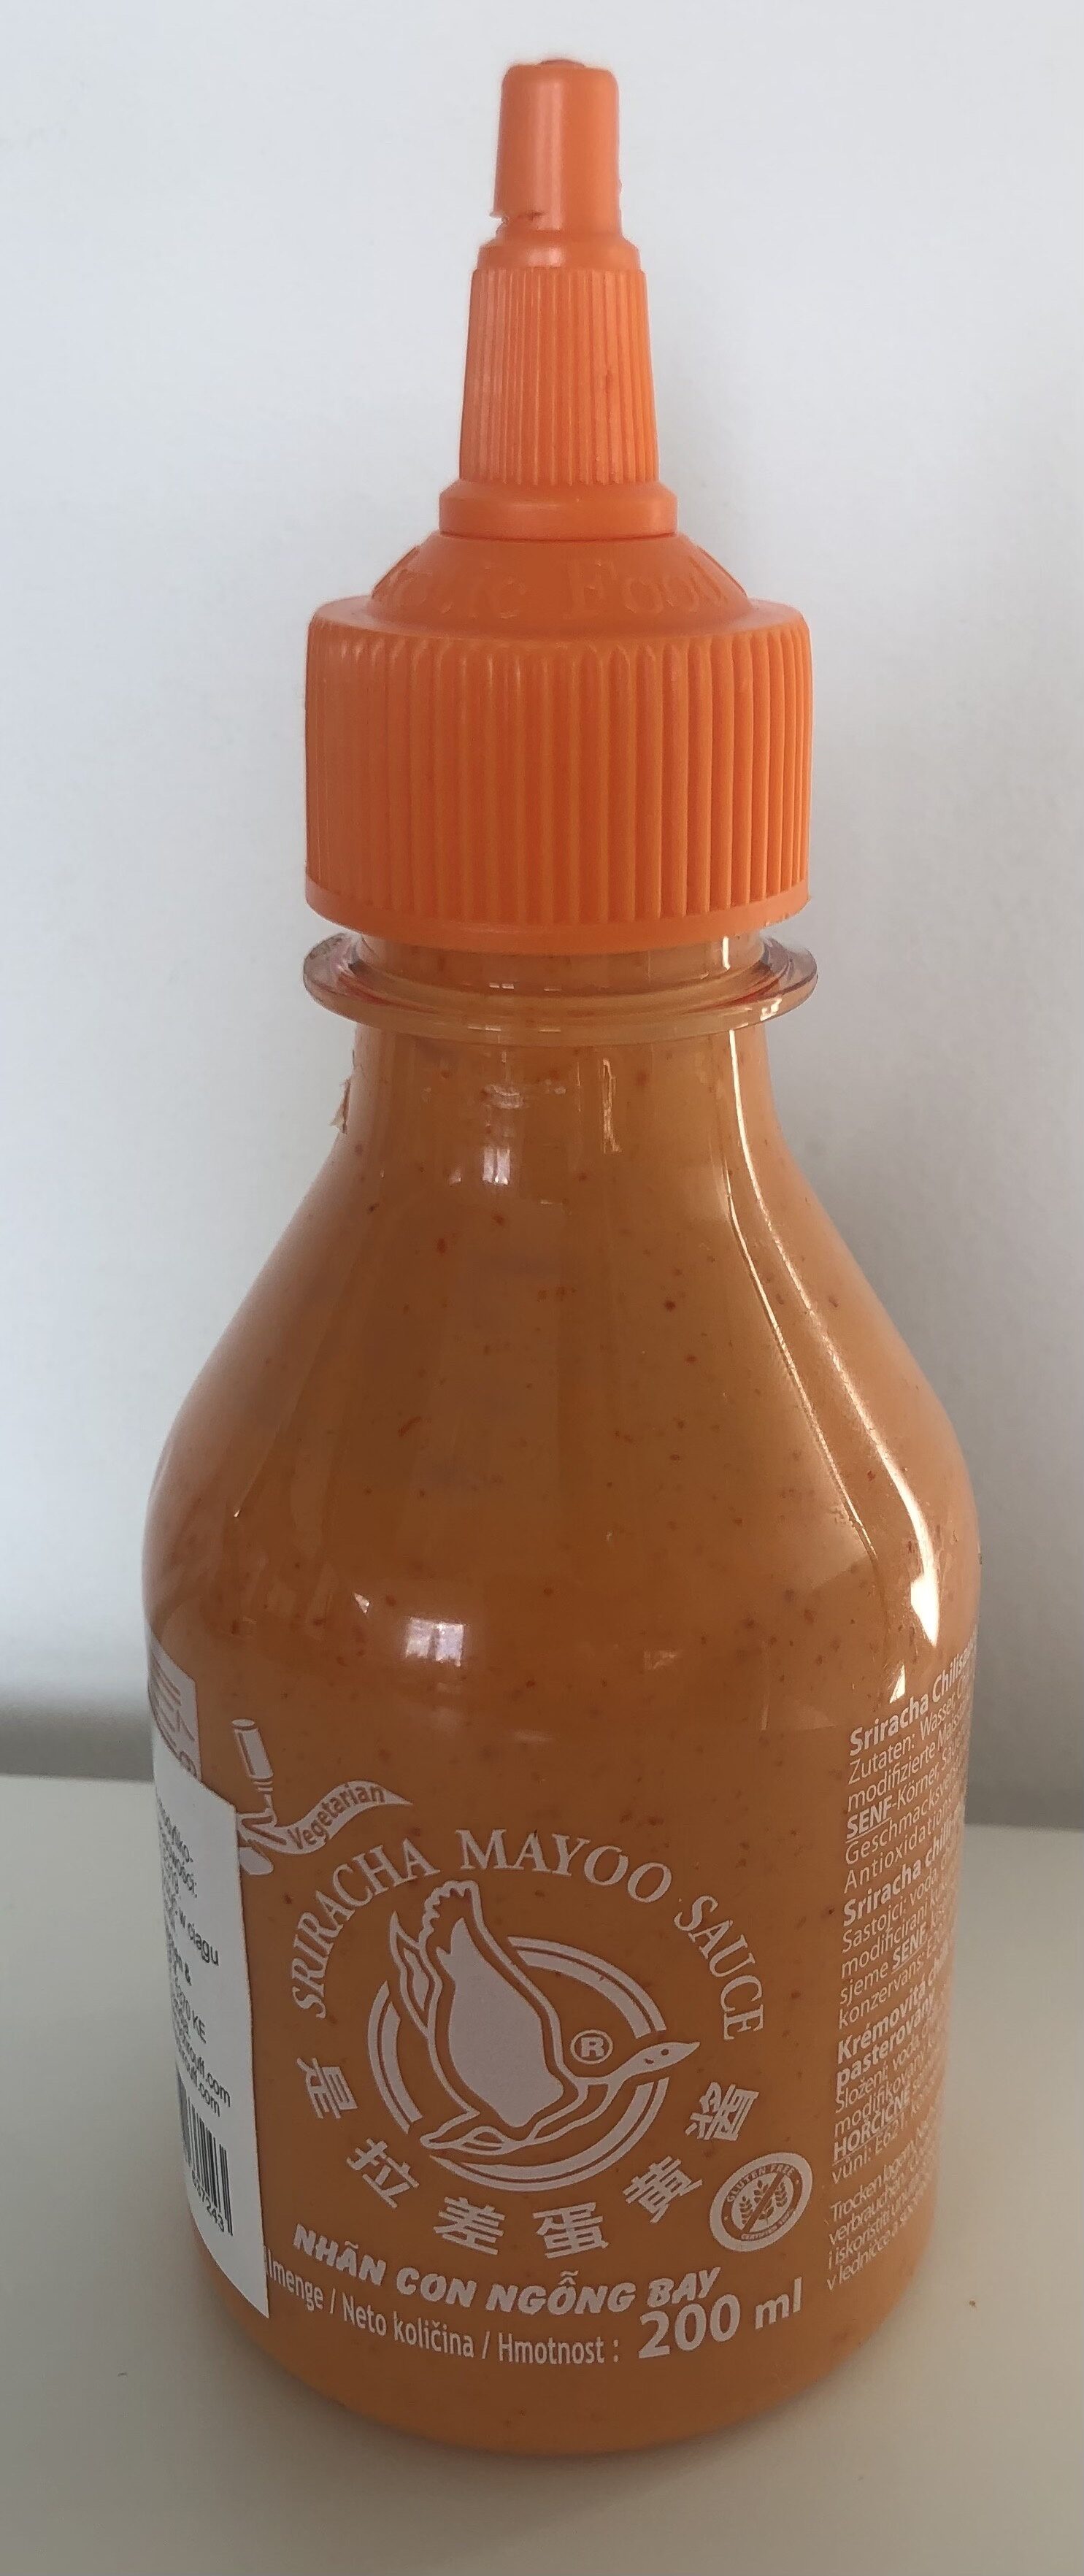 Sriracha mayo - Product - en